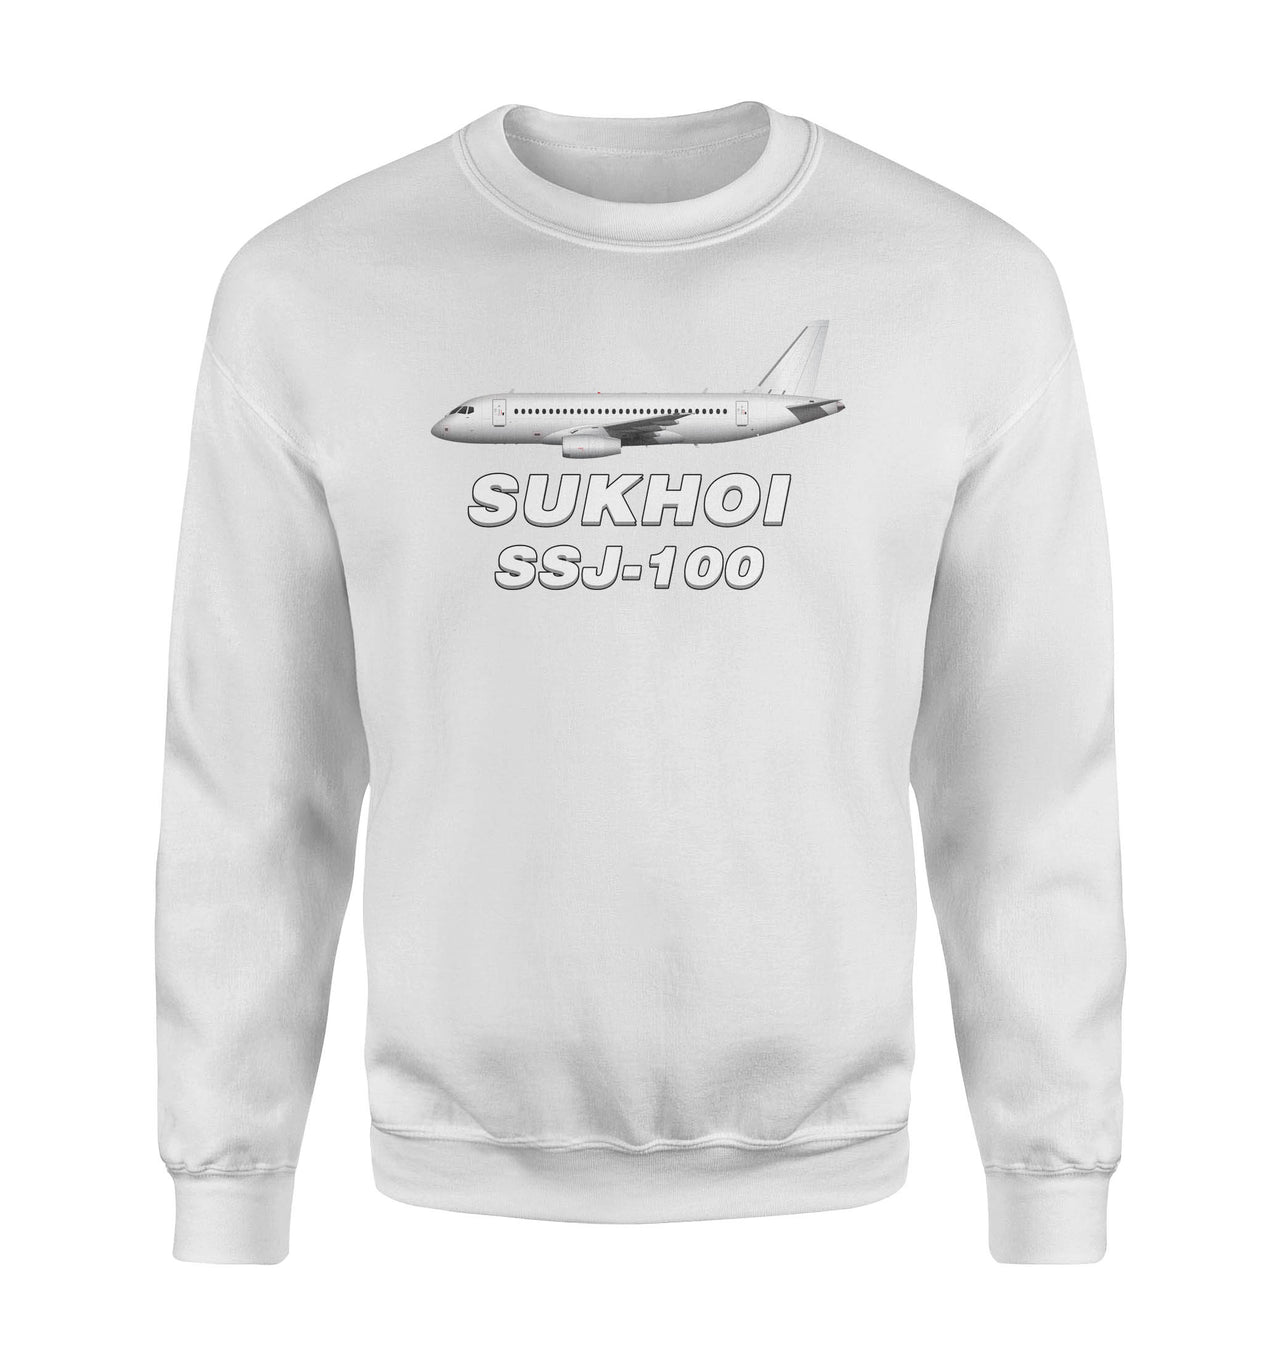 The Sukhoi Superjet 100 Designed Sweatshirts